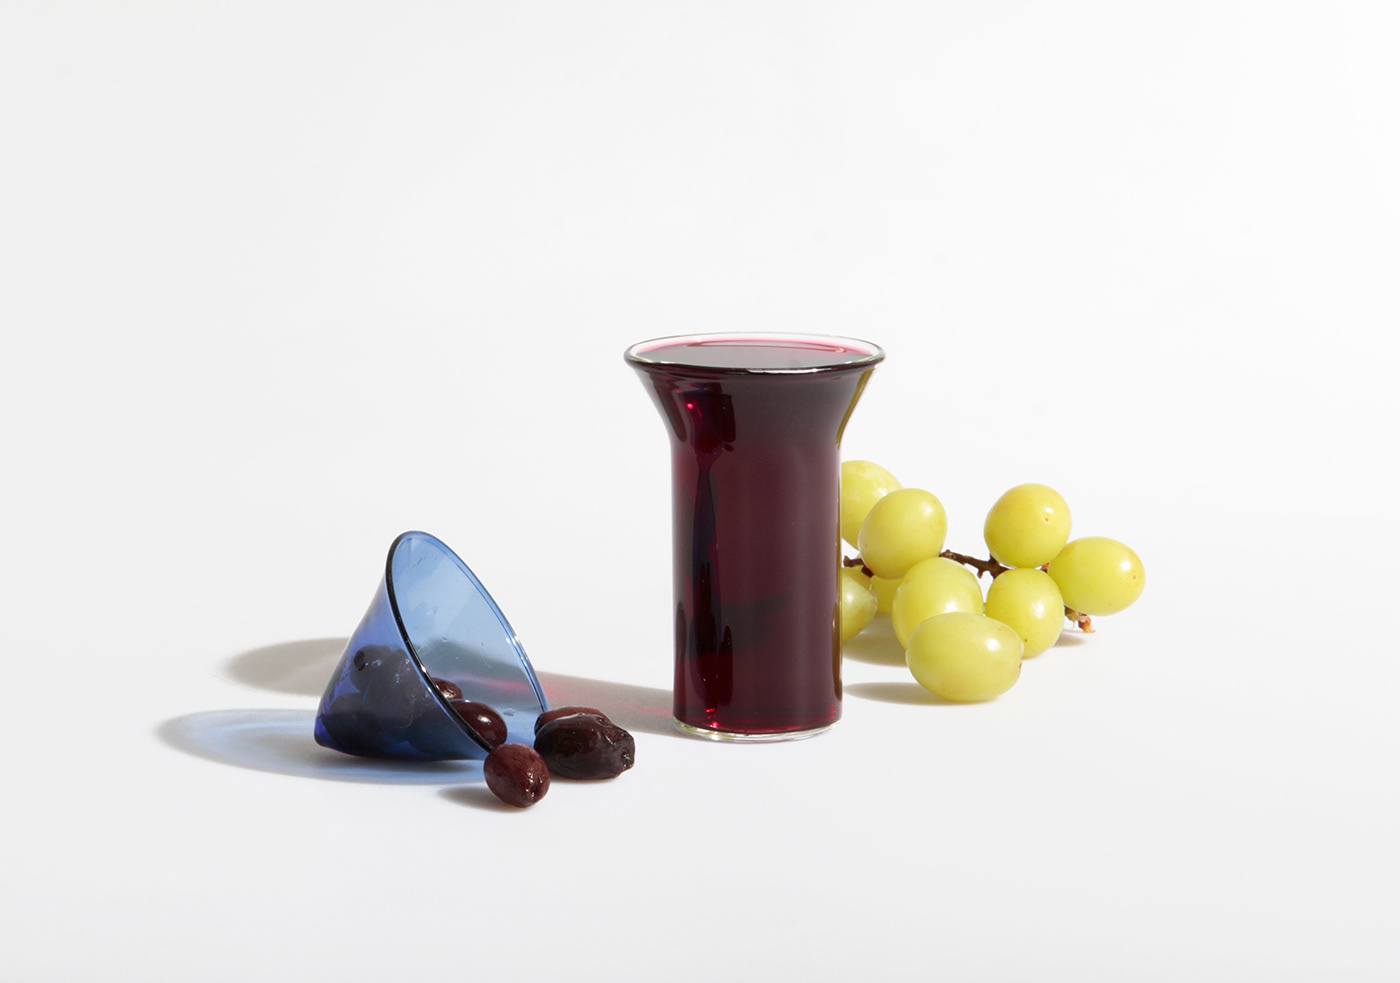 cups drink Drinkware food design glass glassblowing product snacks tableware wine